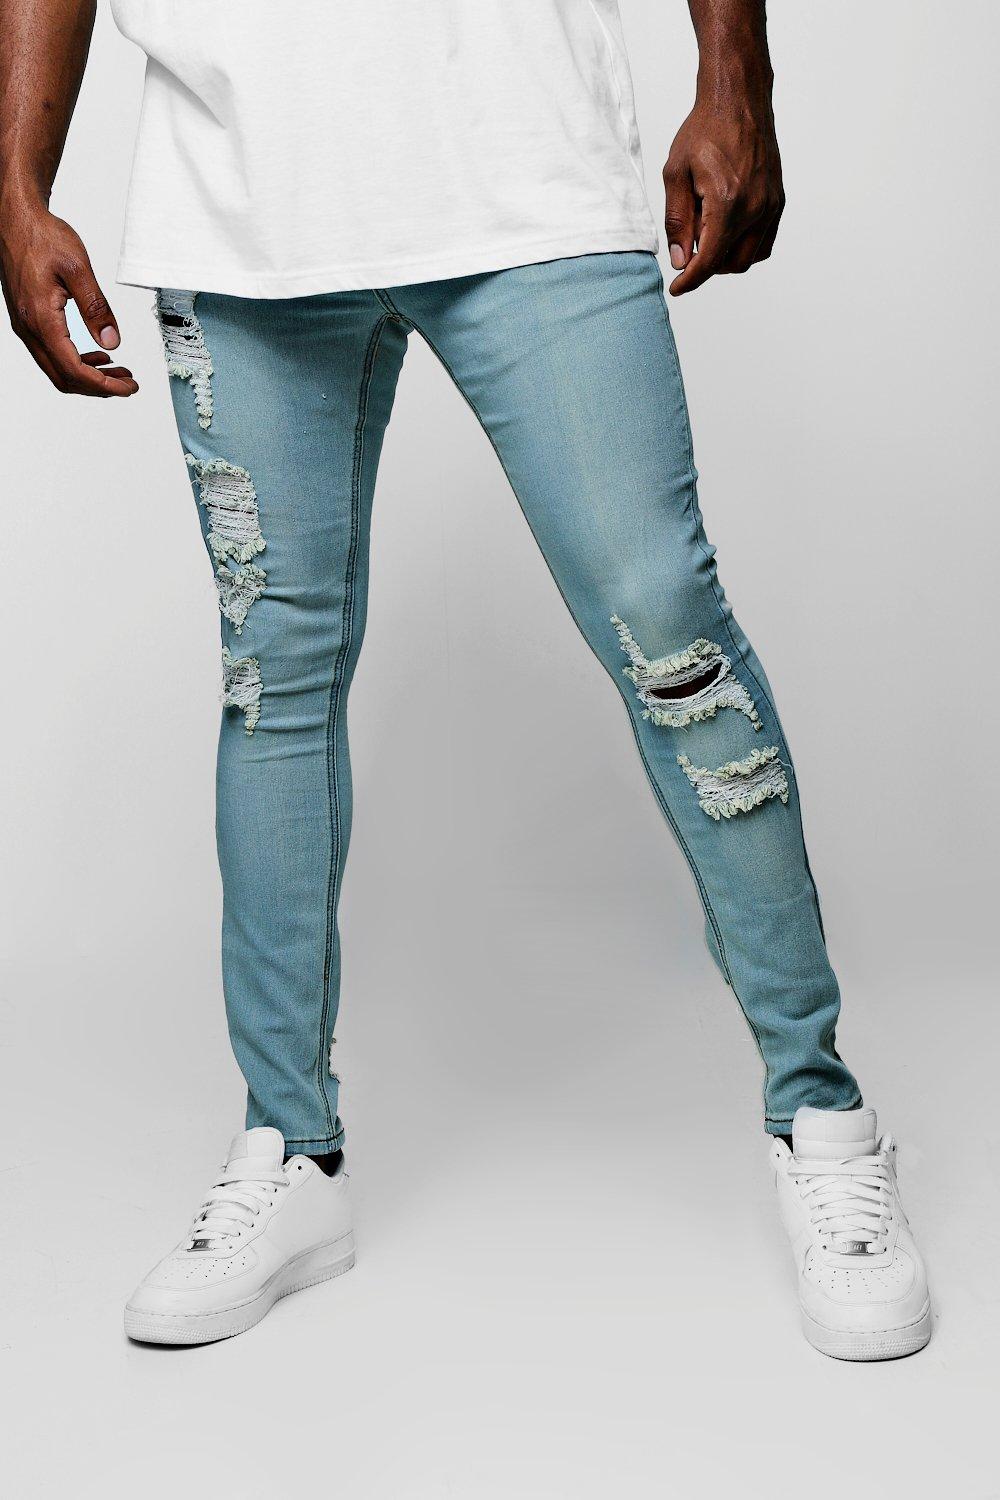 tall distressed skinny jeans